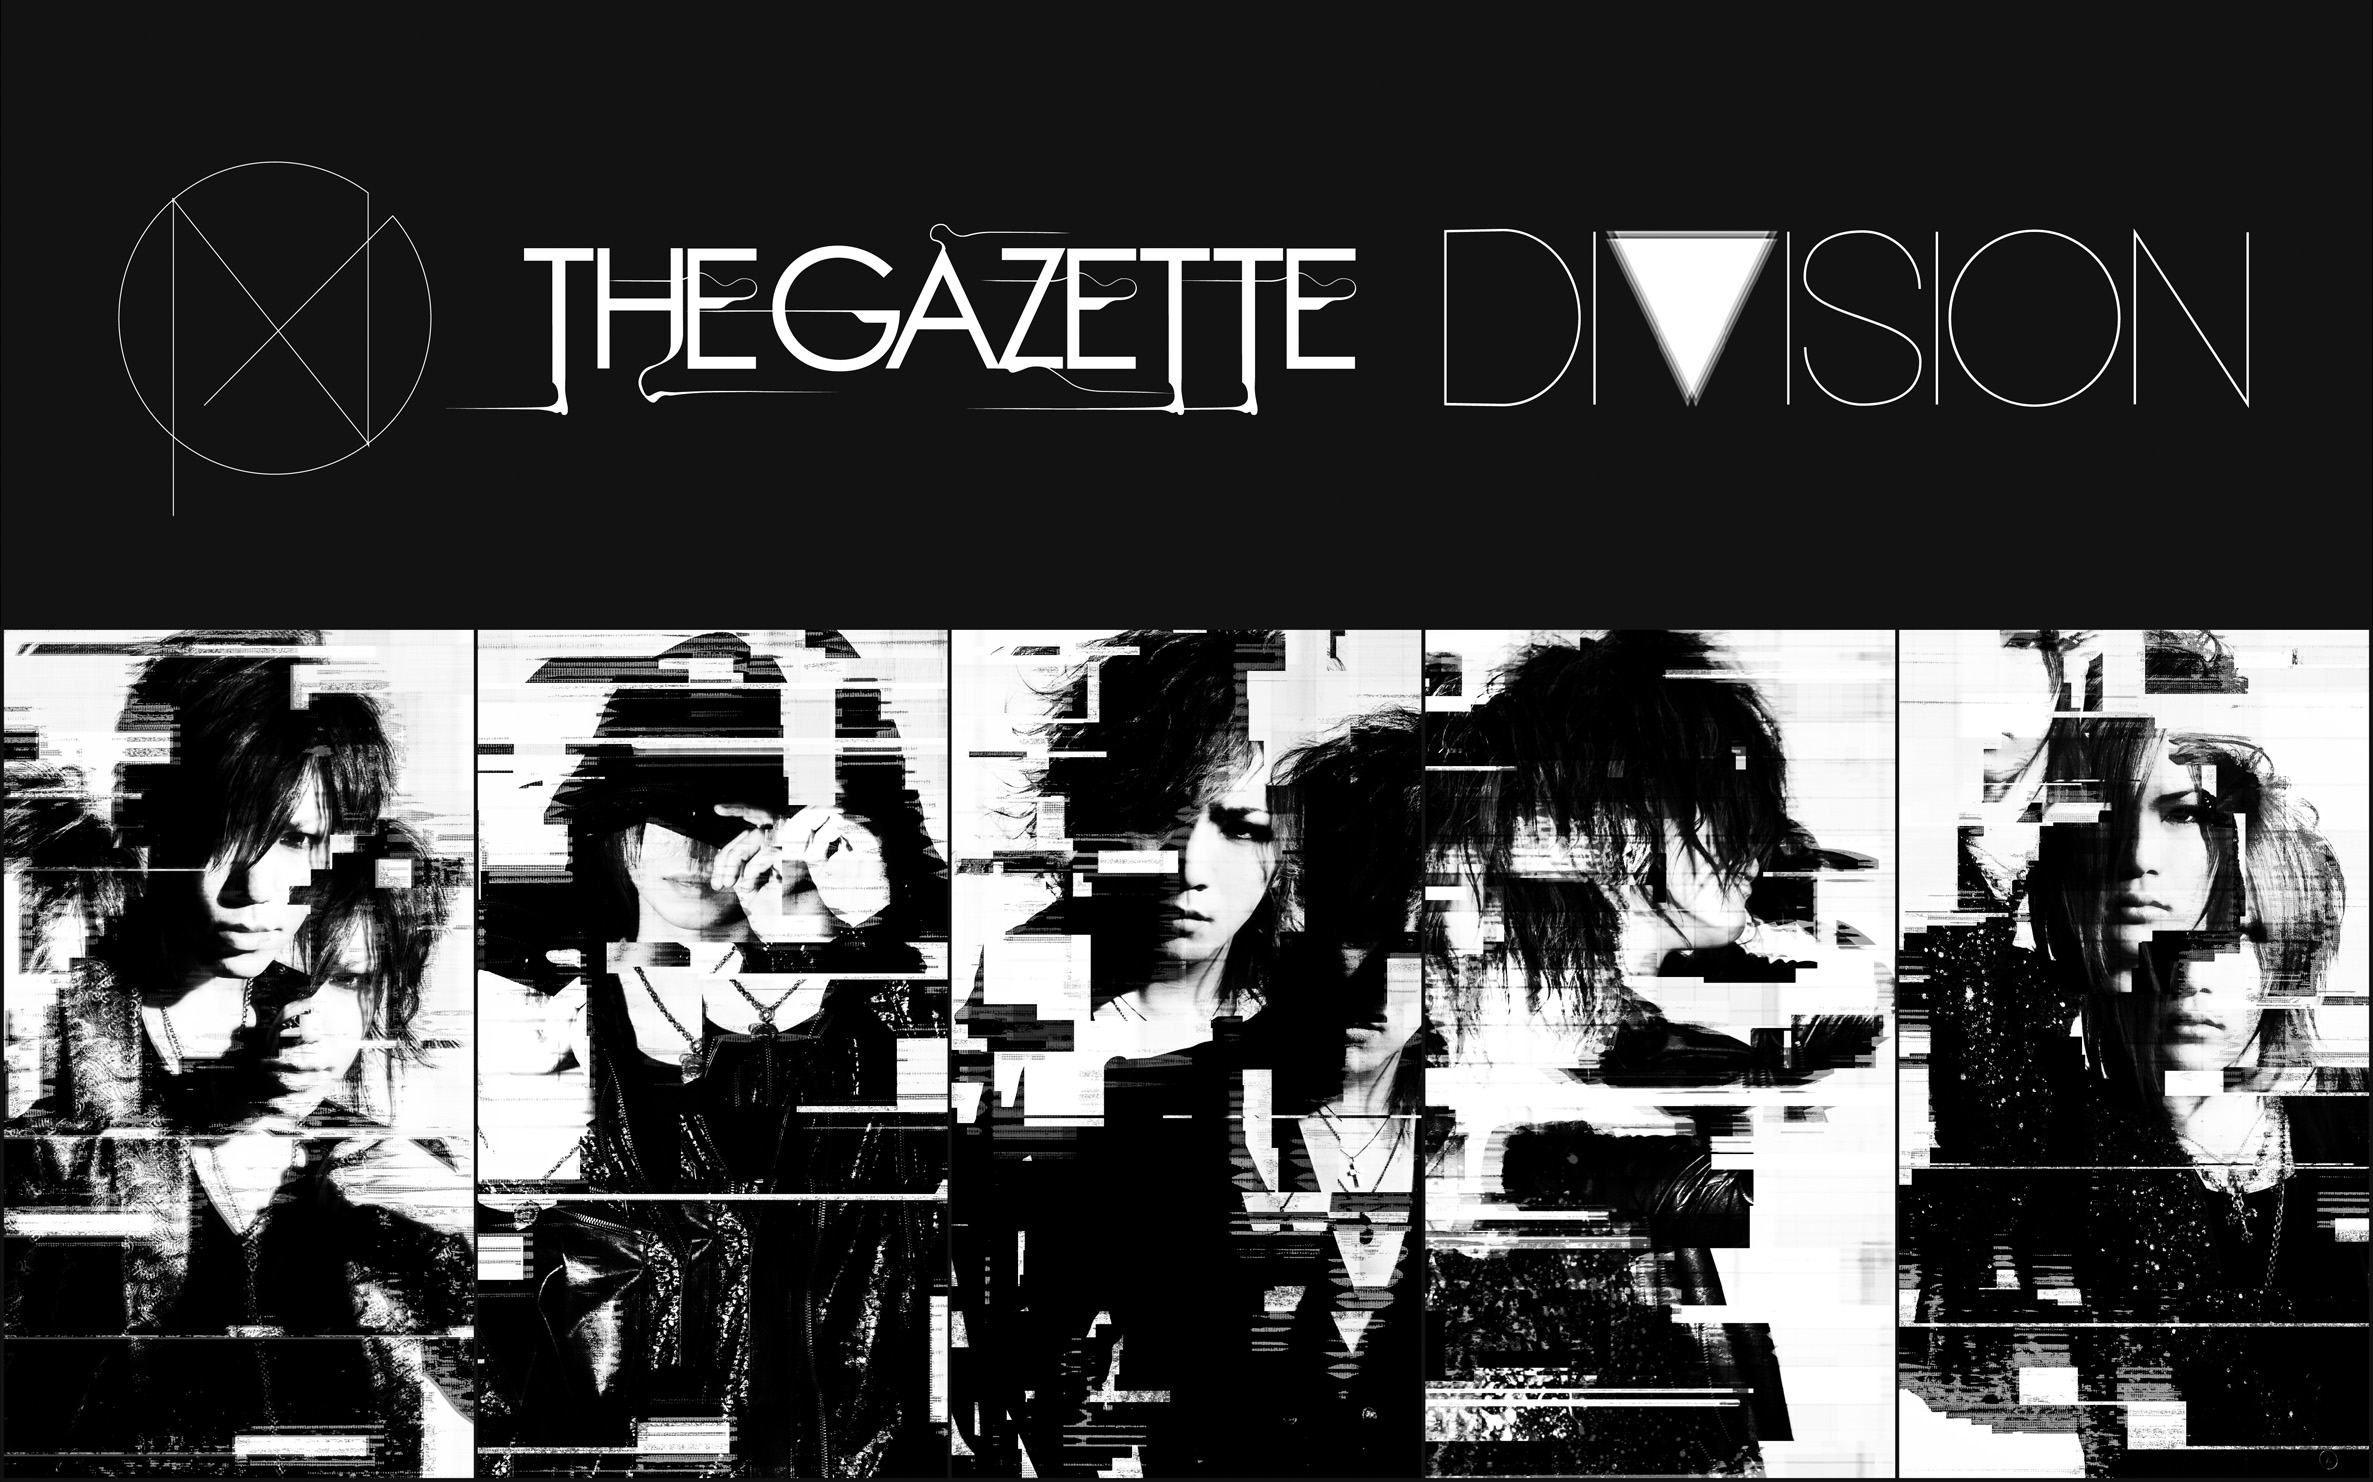 ガゼット, The Gazette, Division, Music Wallpaper